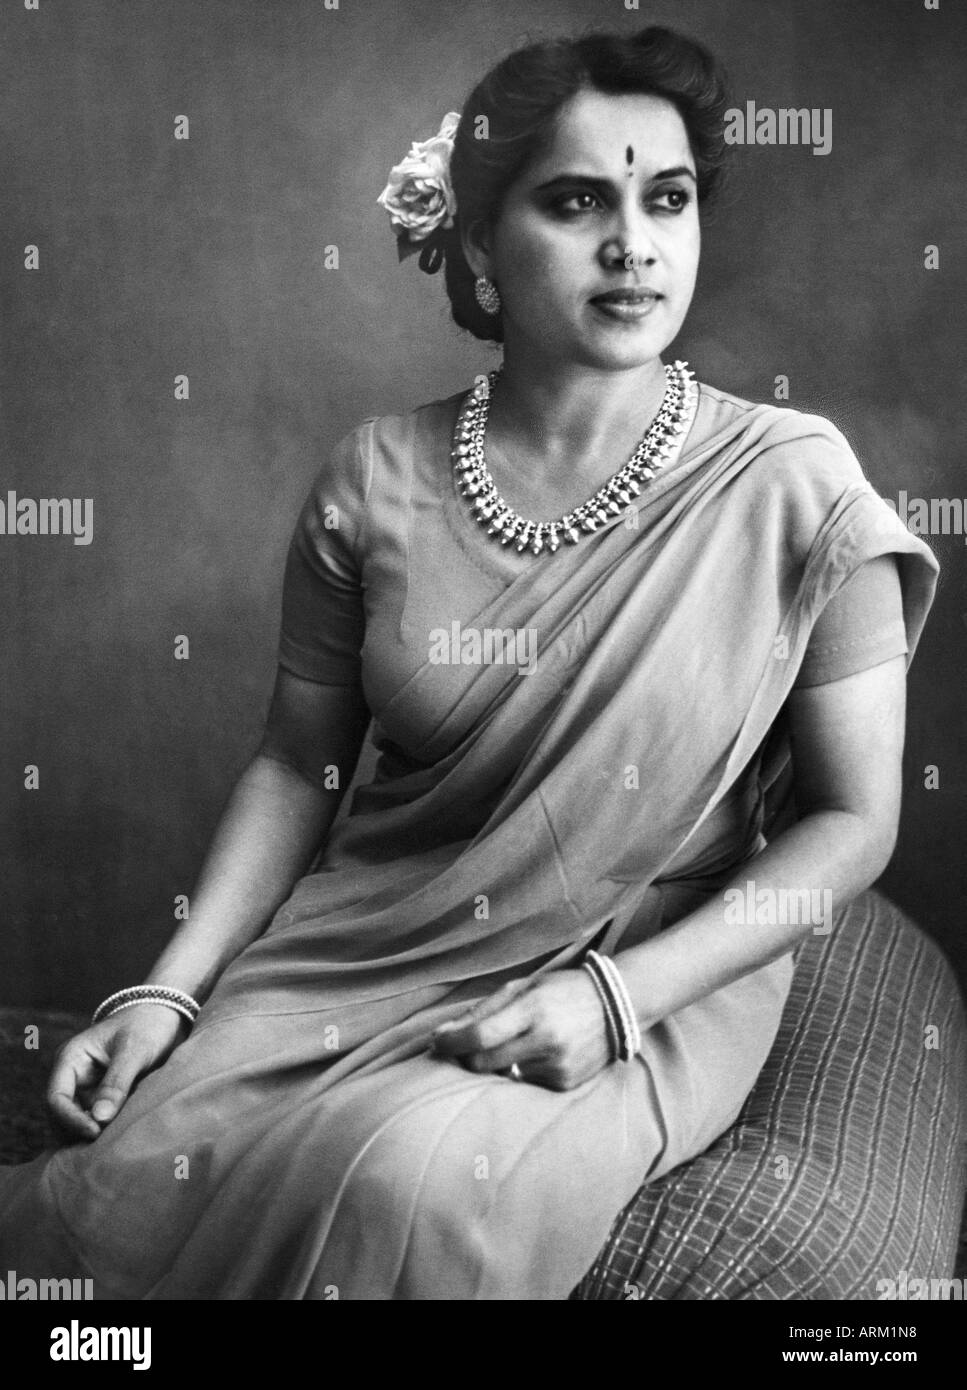 Ancienne photo vintage 1940s de Shanta Apte (1916–1964) une actrice indienne de bollywood hindi film star chanteuse Inde Asie asiatique Banque D'Images